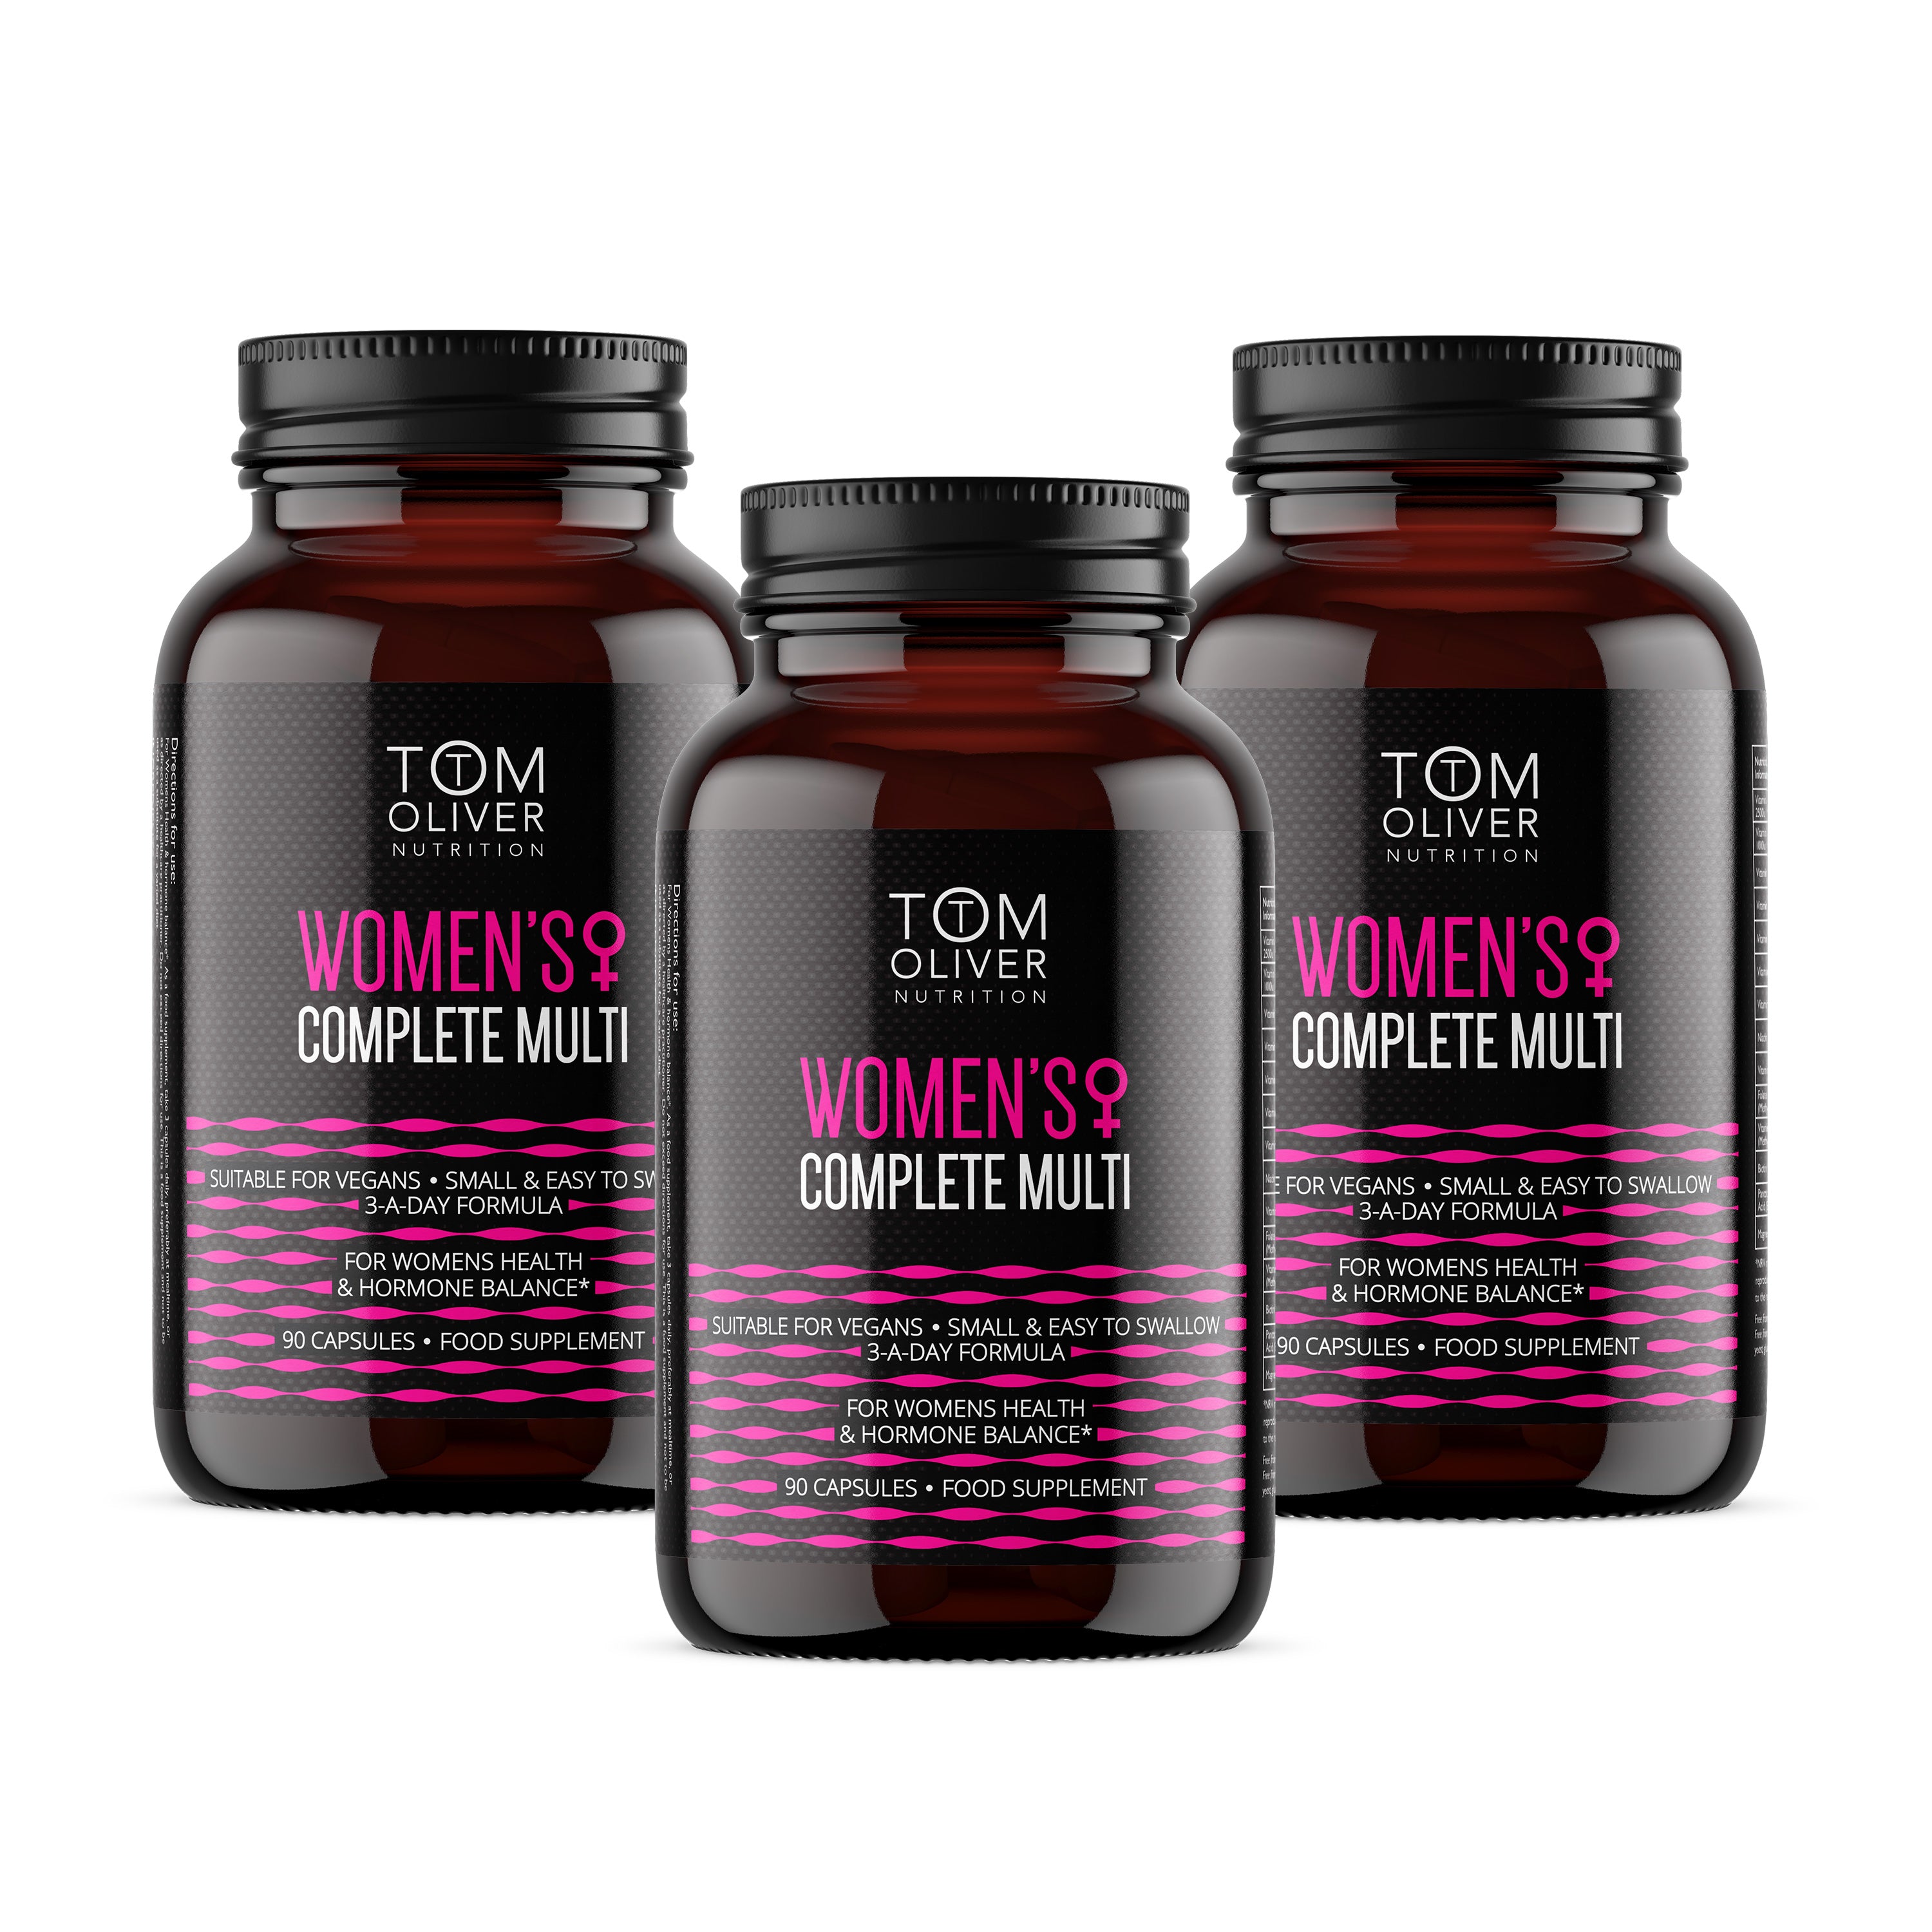 Women's Multi Vitamin Offer Pack (3 Bottles)